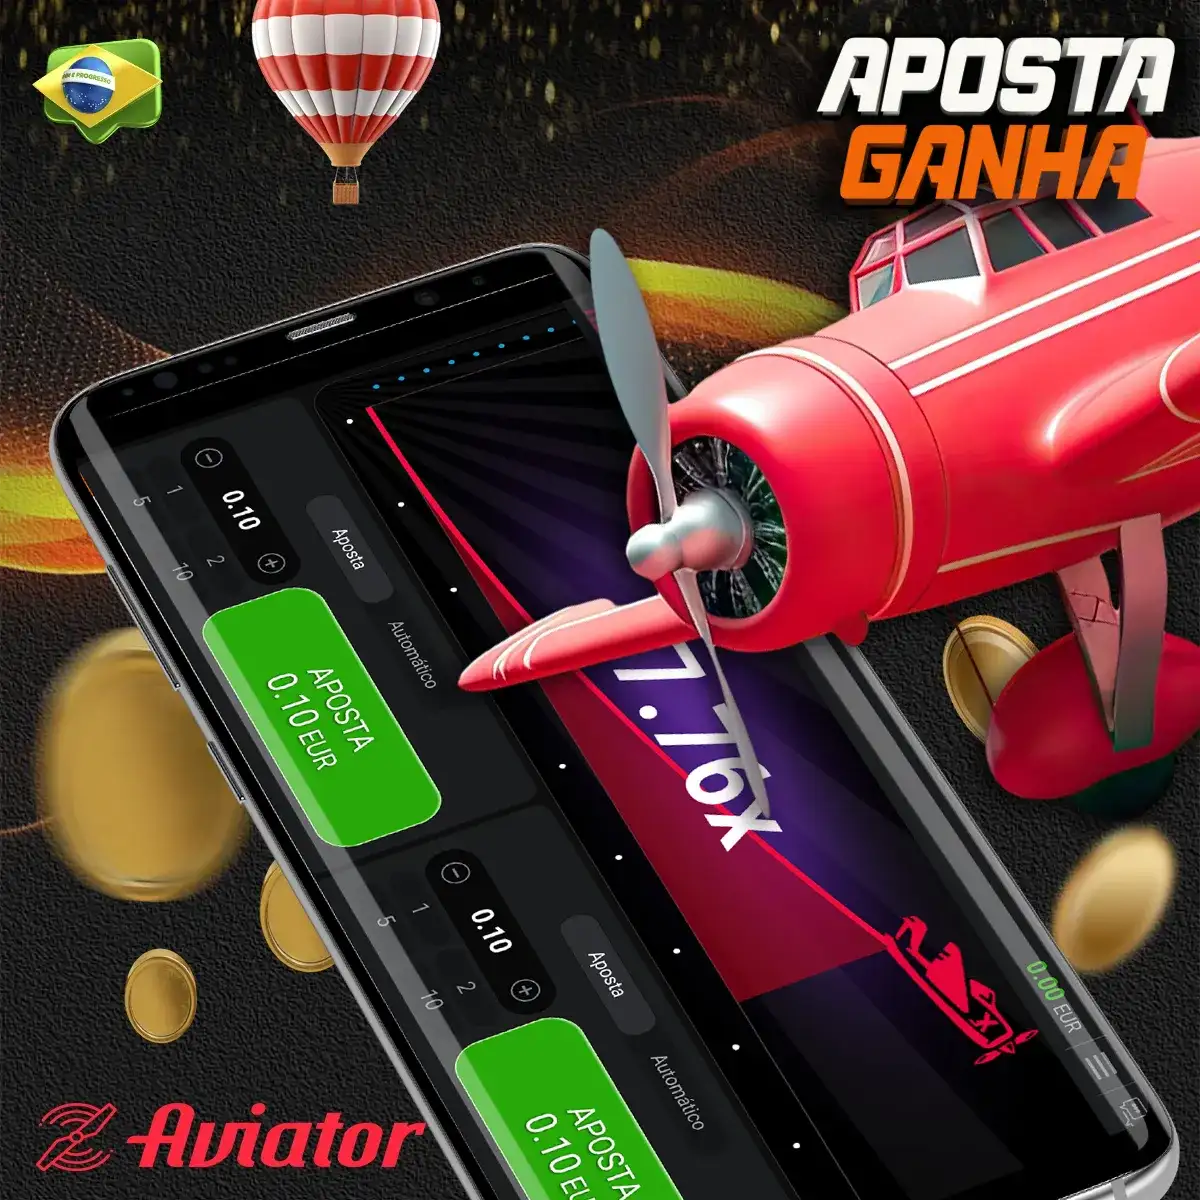 O popular jogo Aviator no Cassino Aposta Ganha app